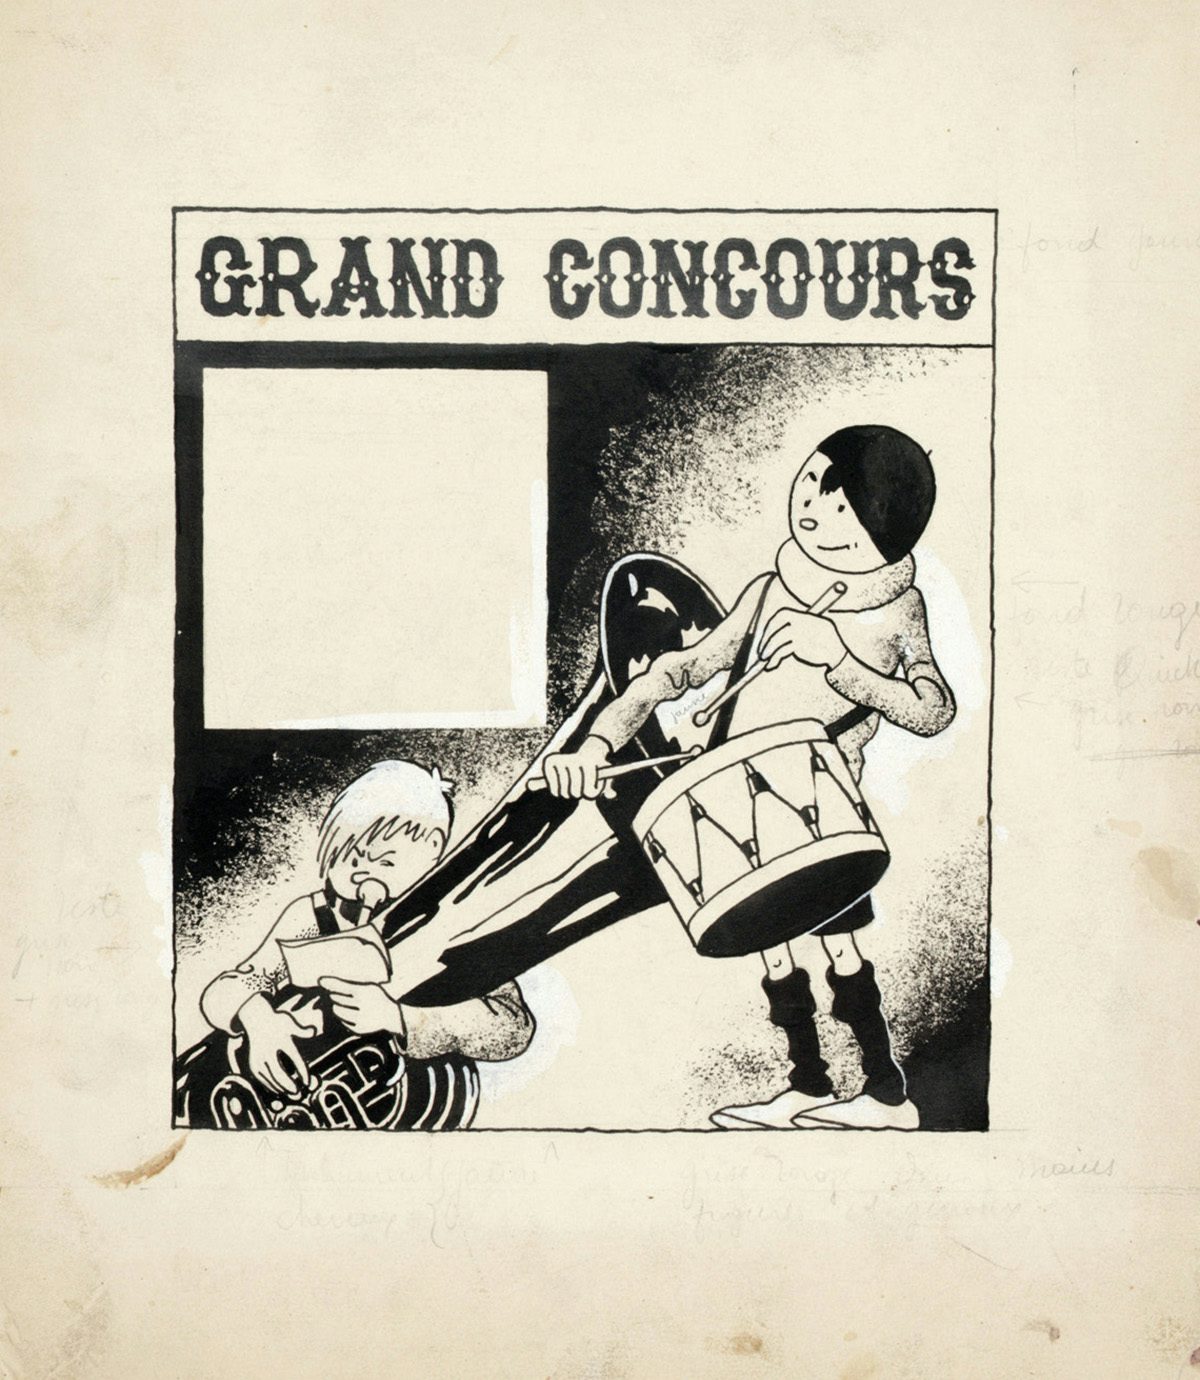  Les Aventures de Quick et Flupke – Grand Concours, cover illustration of the Petit Vingtième edition of June 16 1938 (Indian ink and gouache on paper)